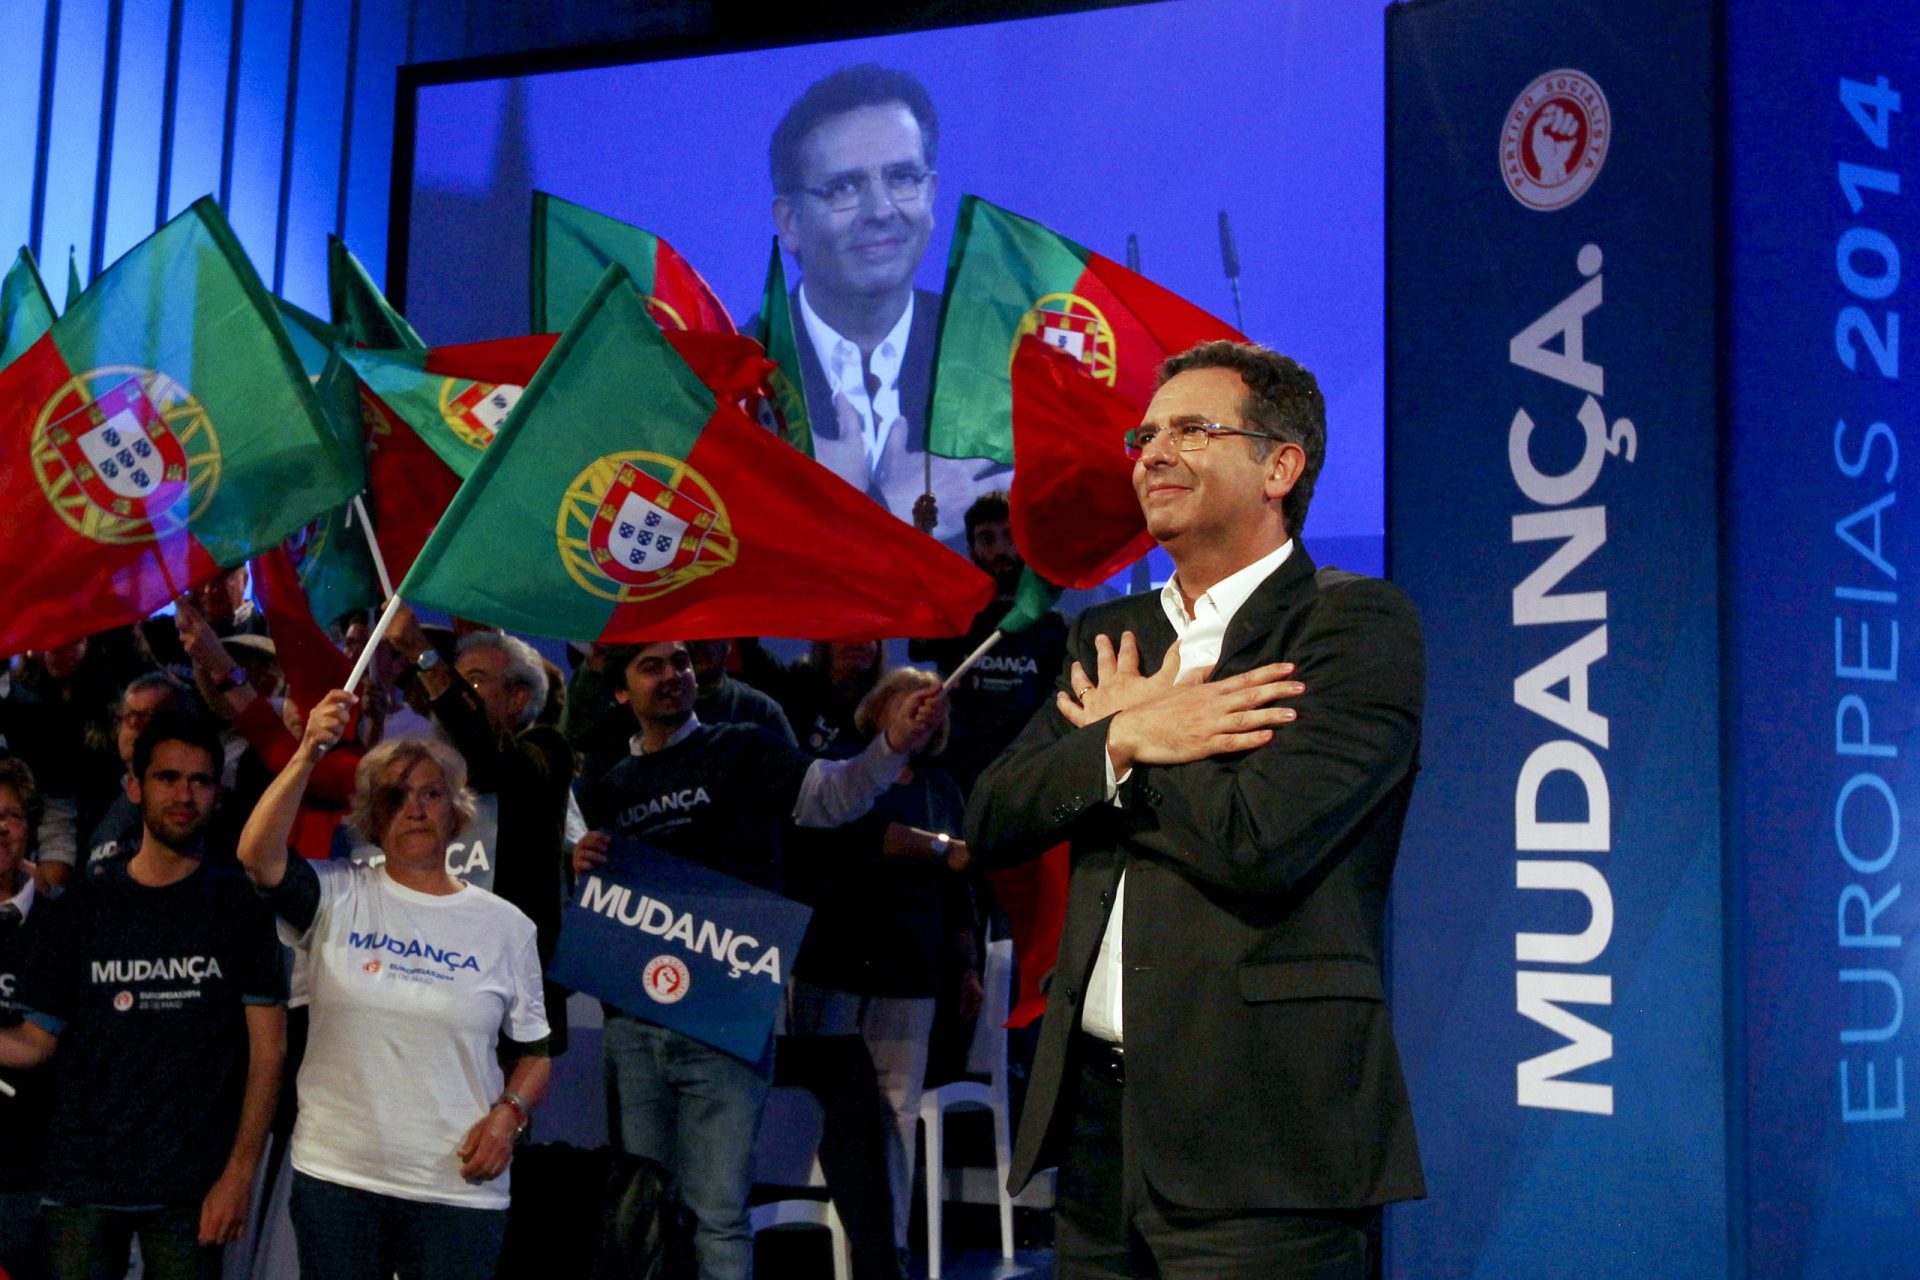 Europeias: Baião foi o concelho que mais votou PS